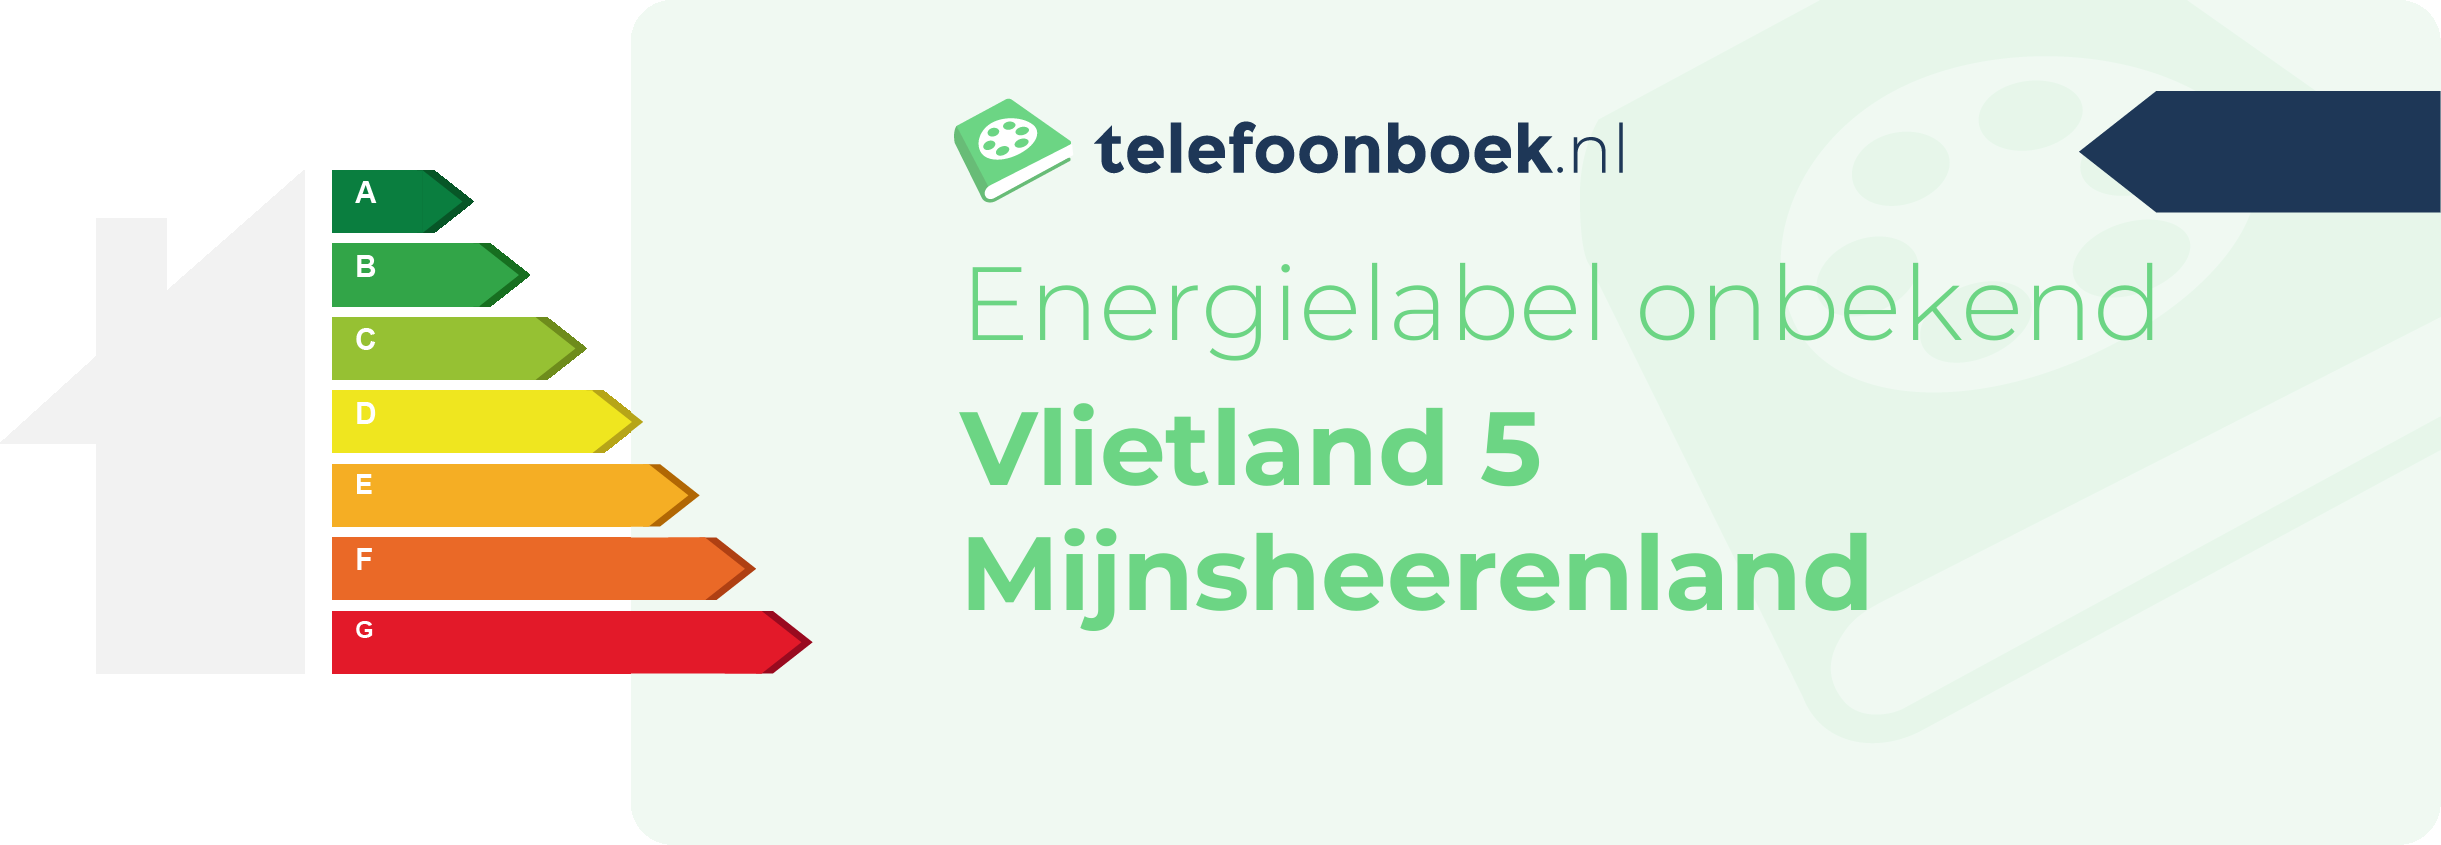 Energielabel Vlietland 5 Mijnsheerenland